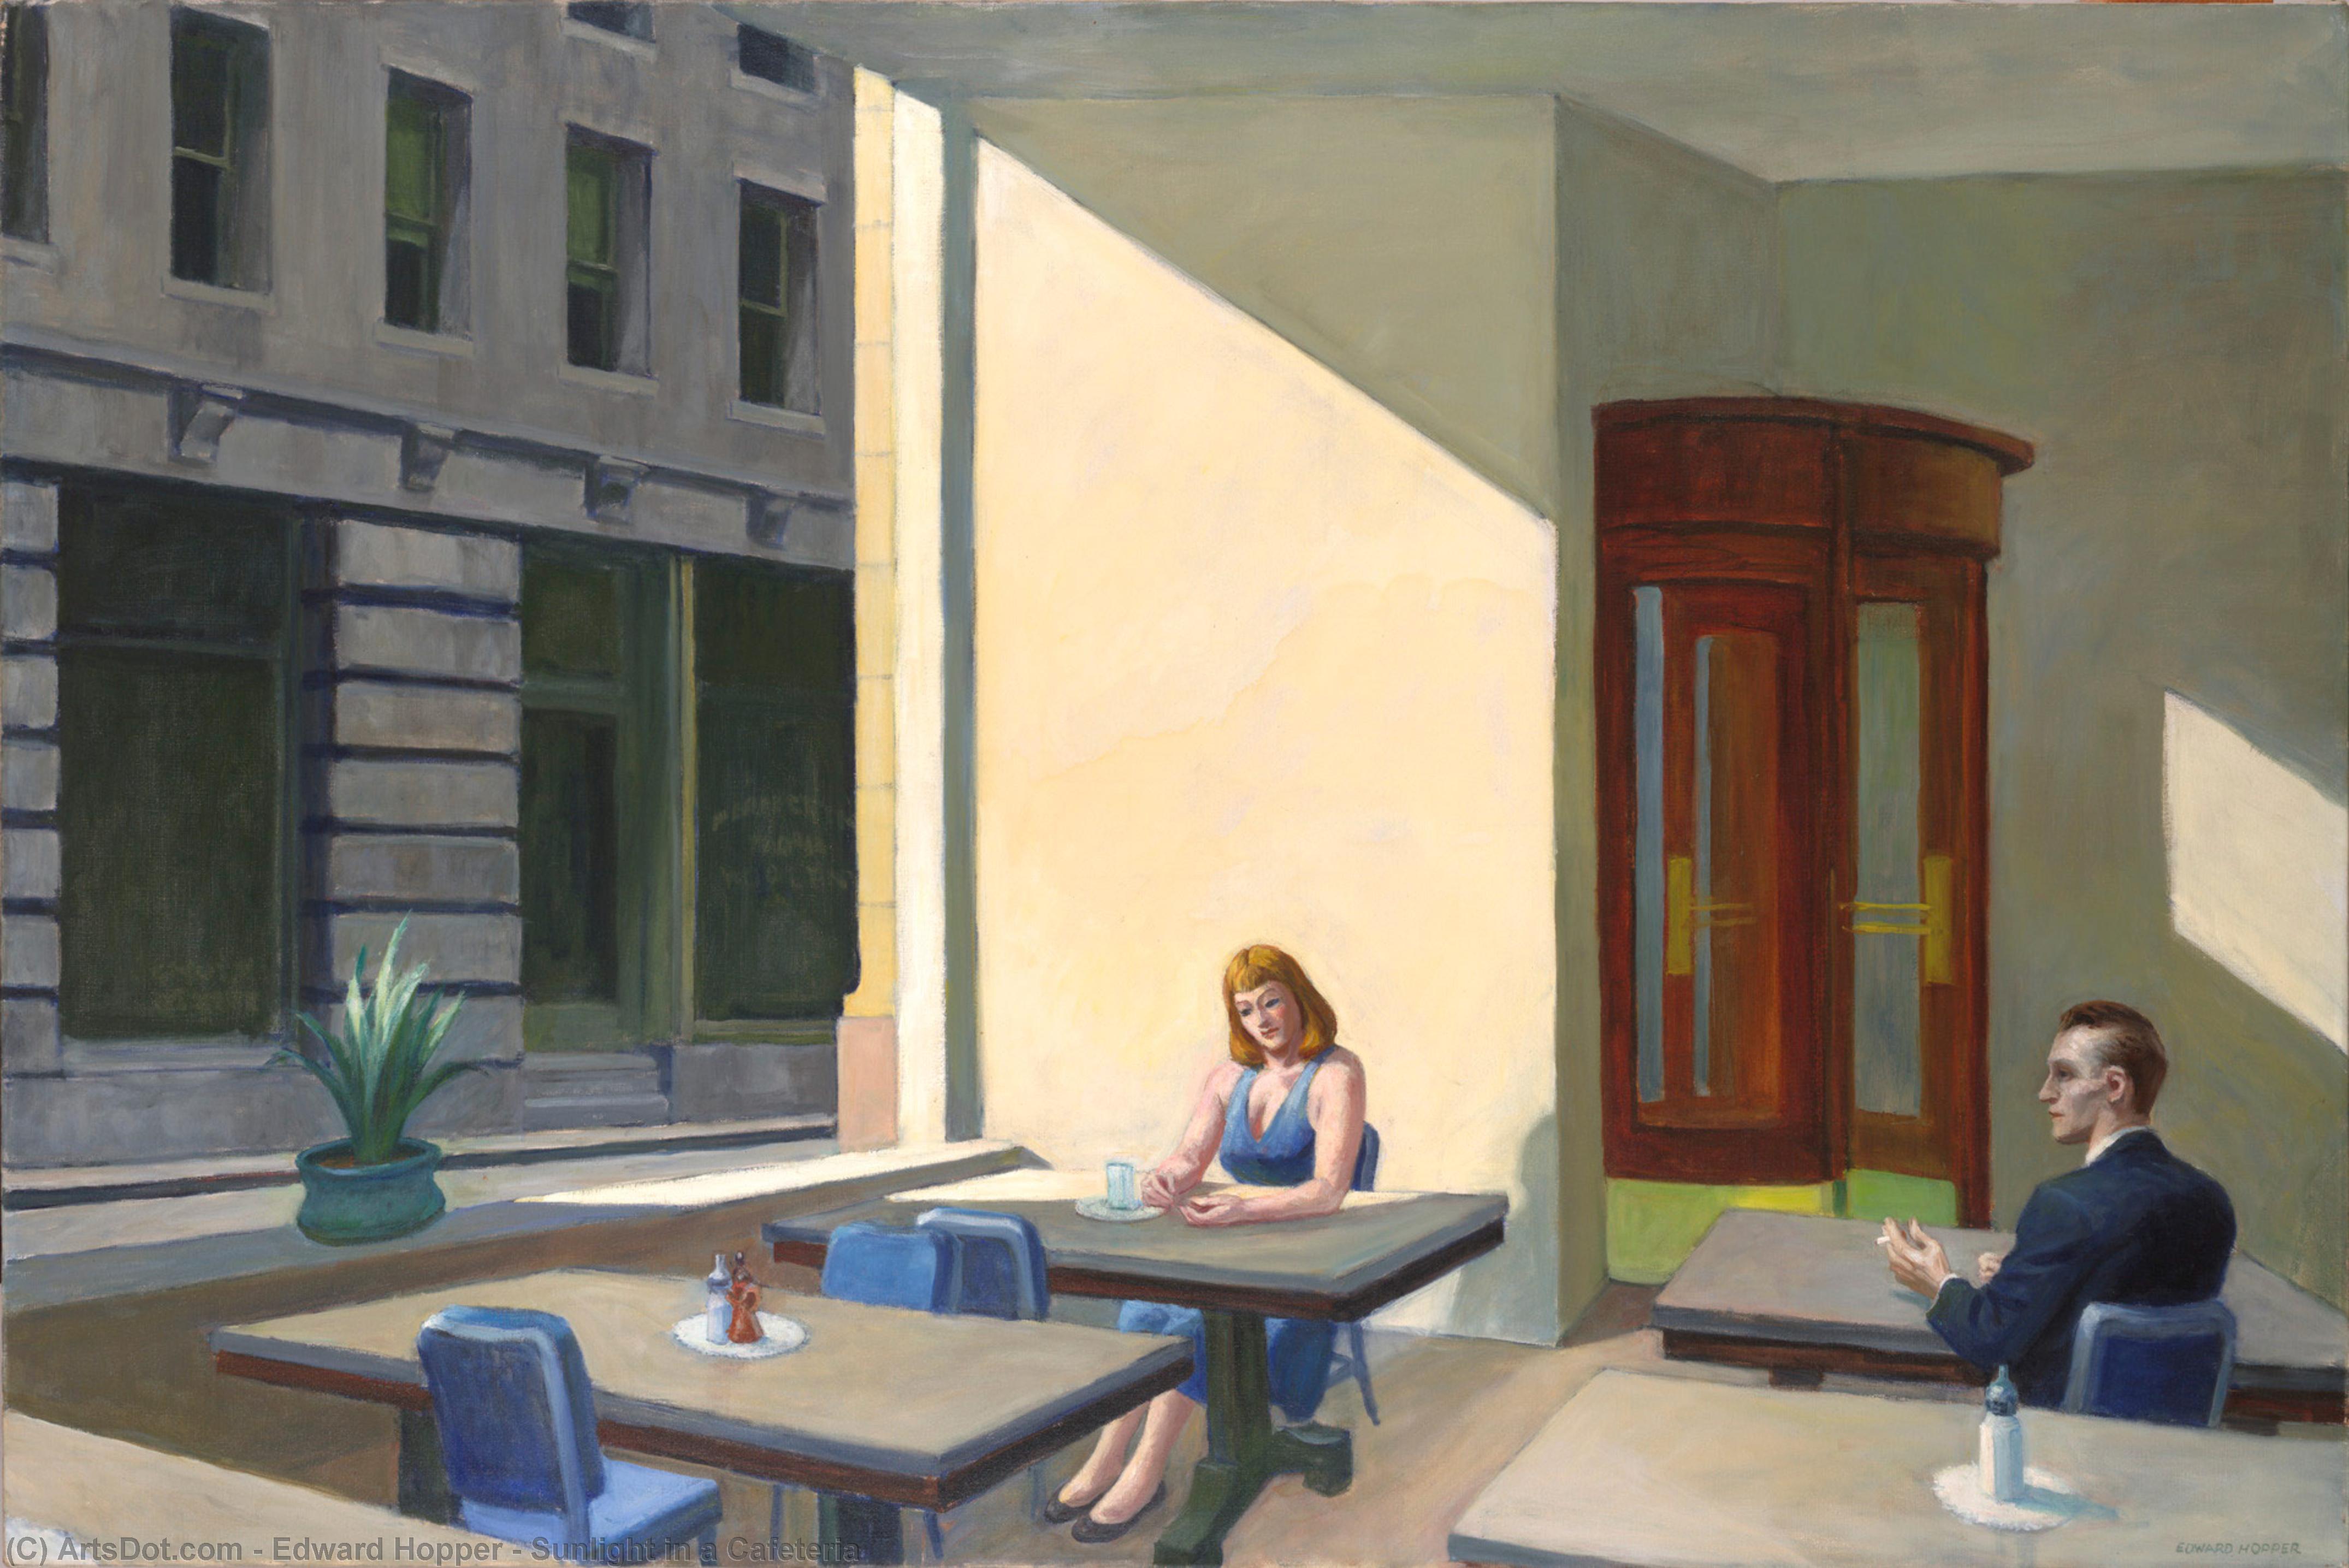 Achat Reproductions D'art La lumière du soleil dans une cafétéria, 1958 de Edward Hopper (Inspiré par) (1931-1967, United States) | ArtsDot.com